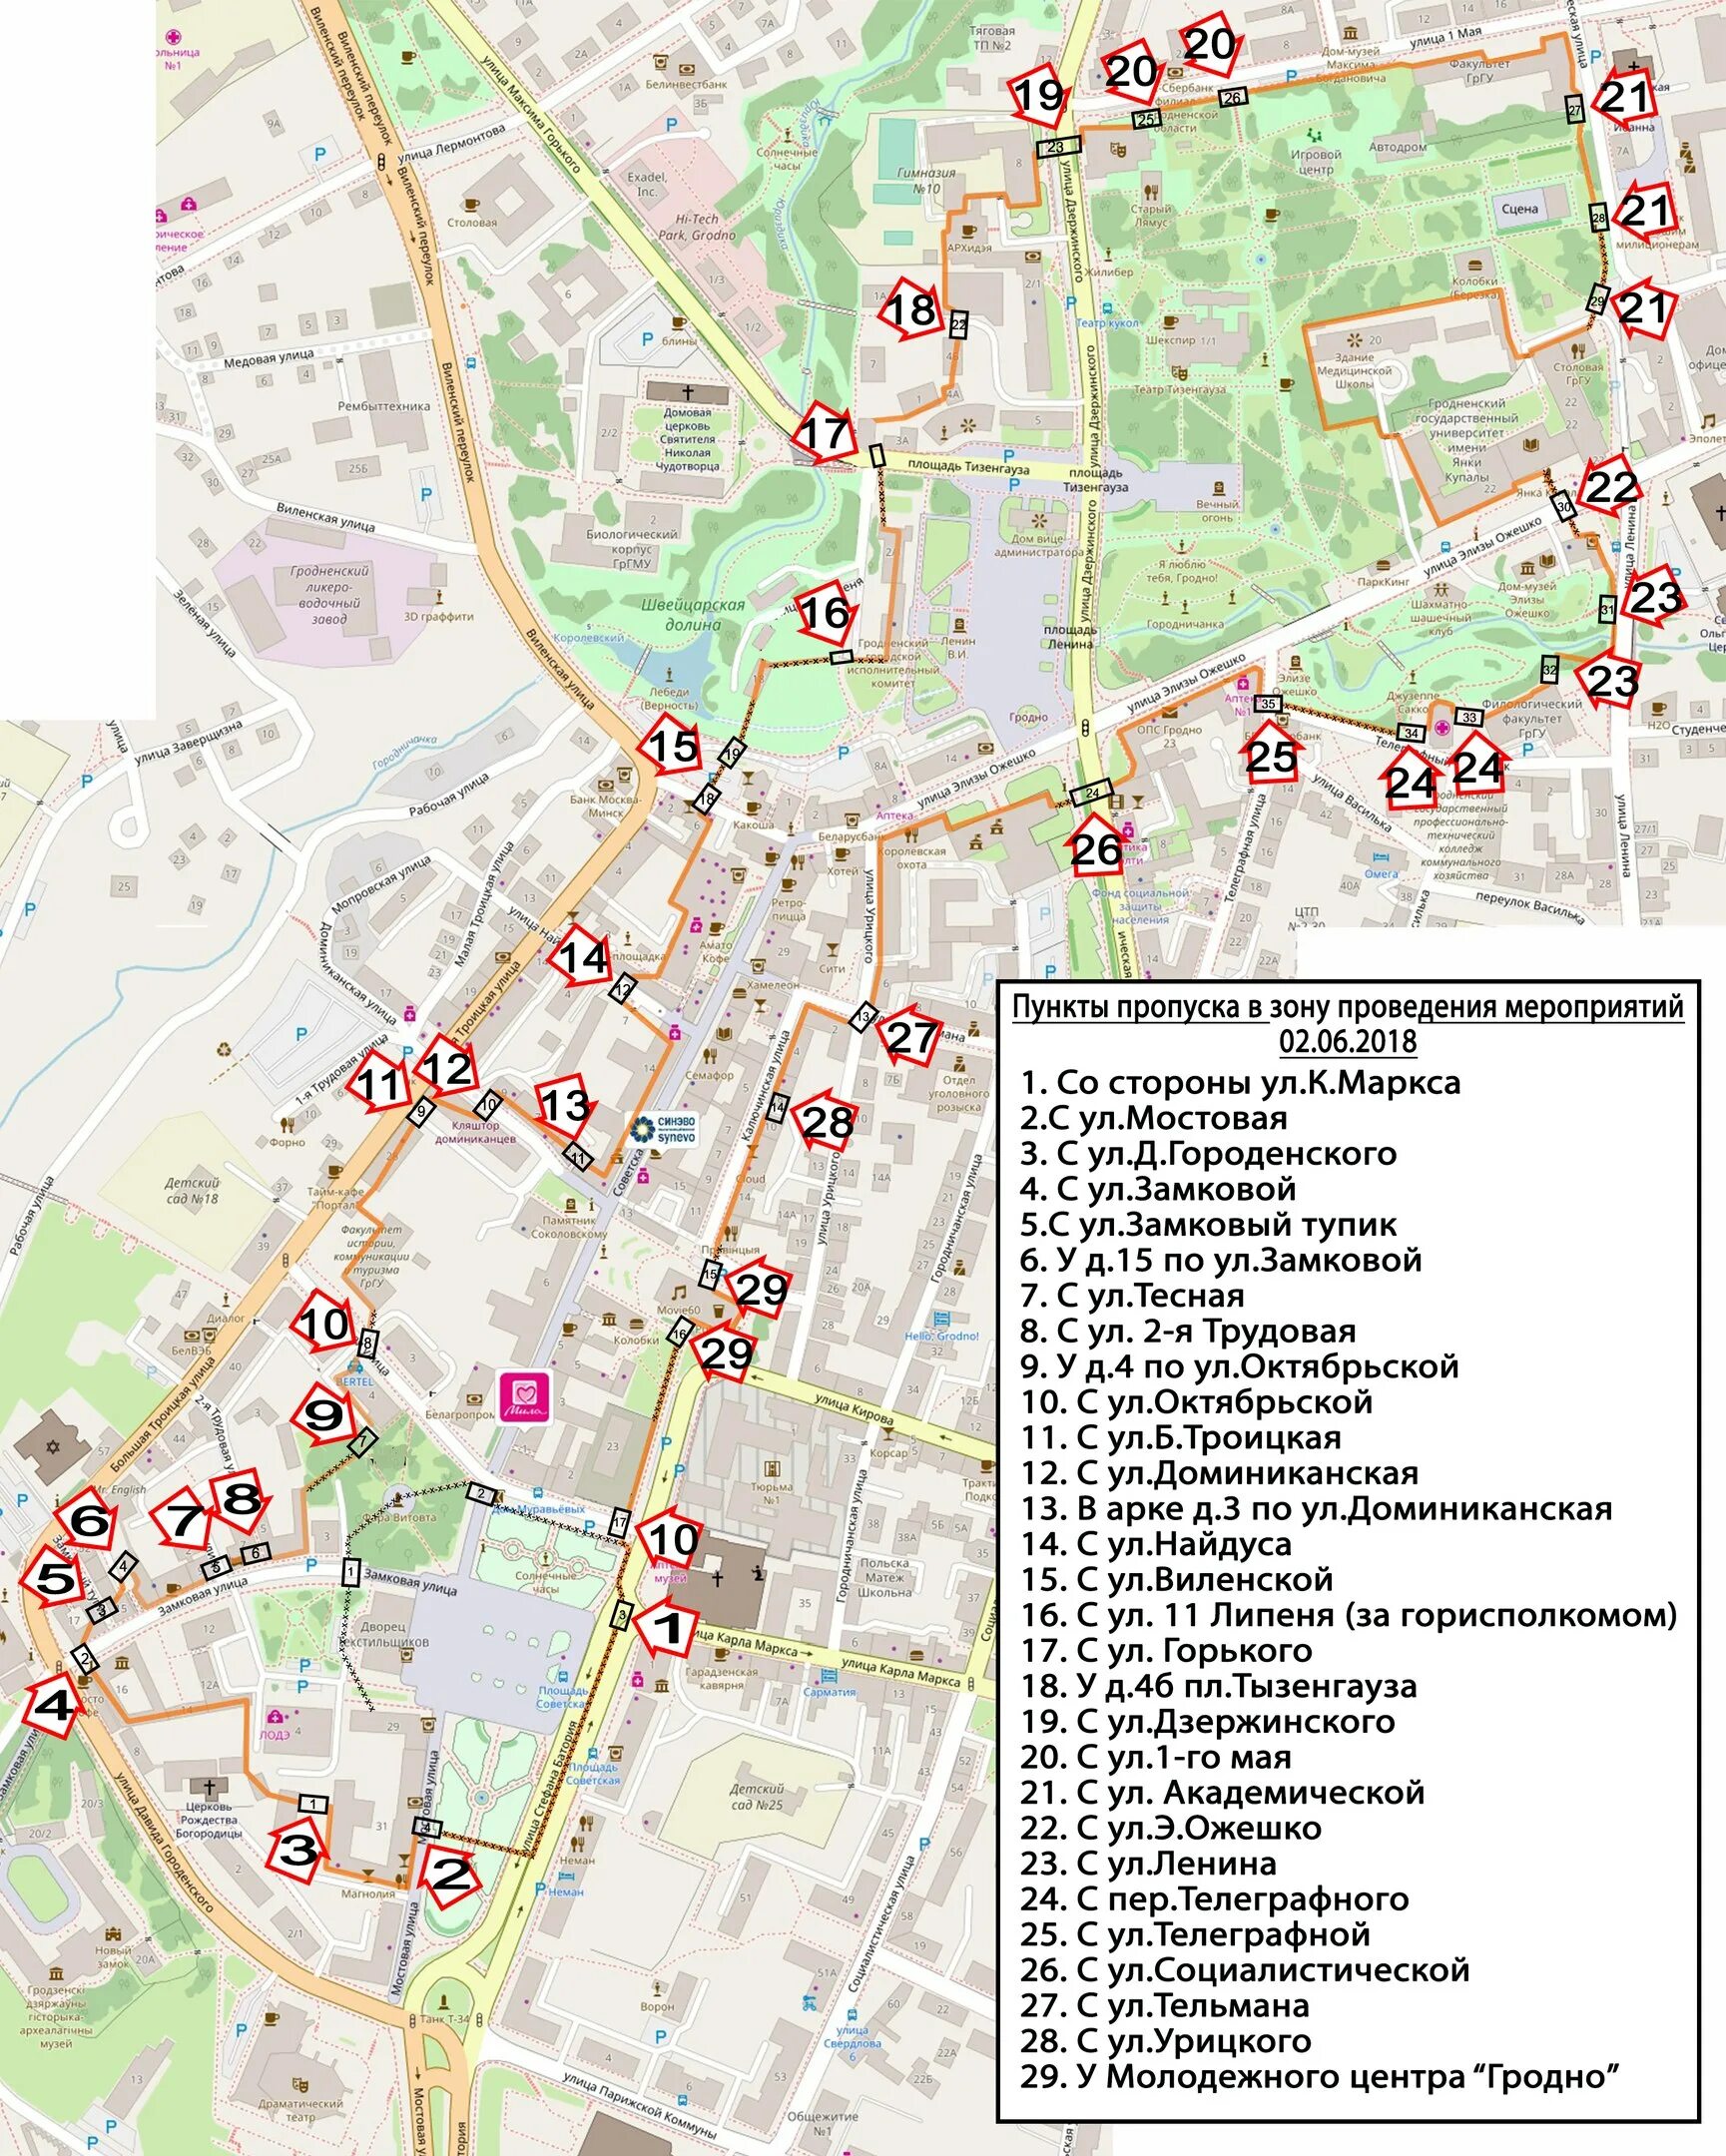 Центр Гродно на карте. Туристическая карта Гродно. Карта центр города Гродно. Гродно туристическая карта города.